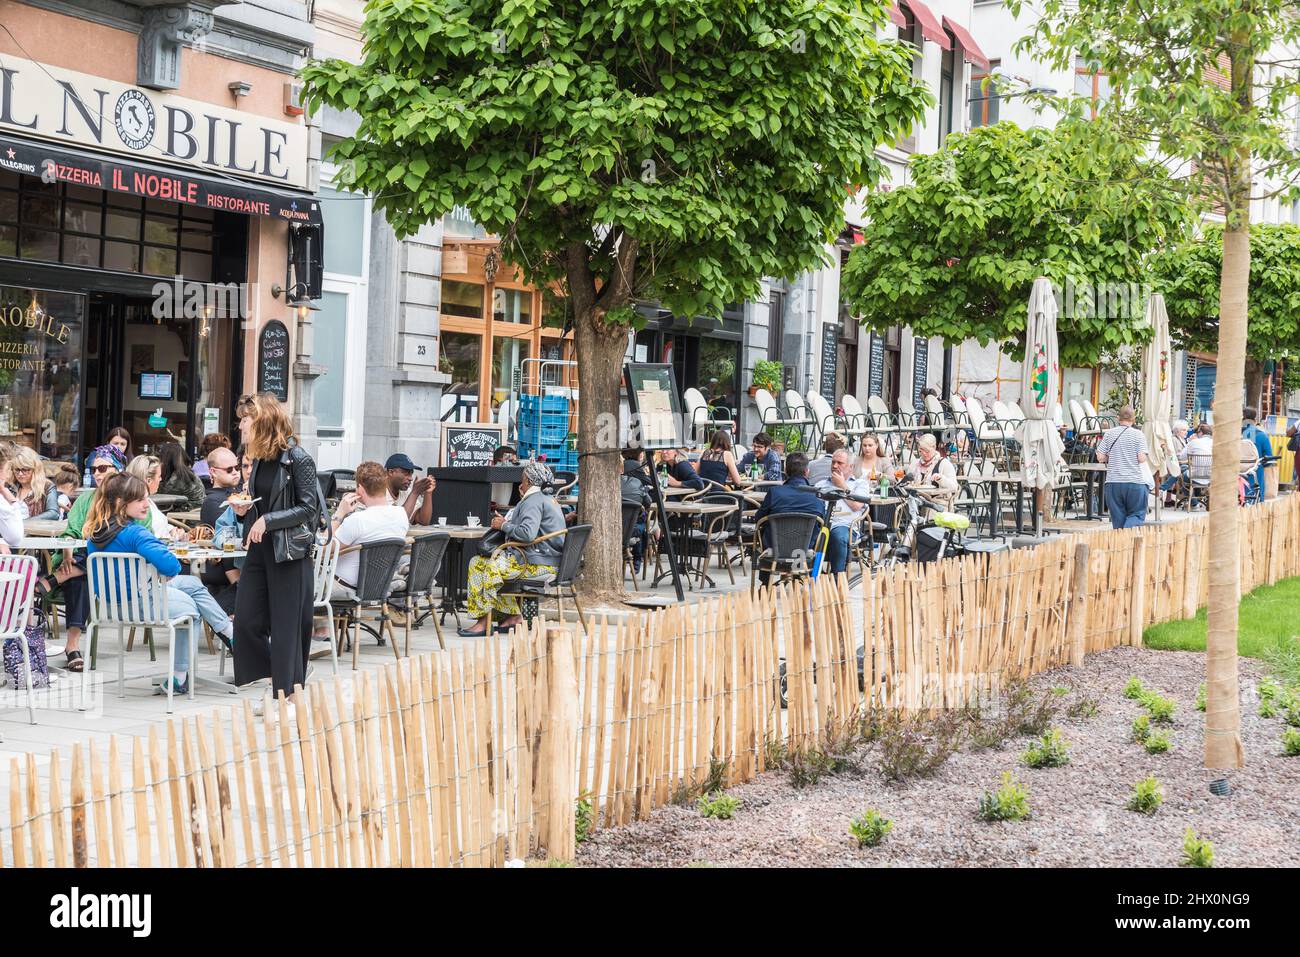 Ixelles, Bruxelles - Belgique - 05 31 2019 - les gens mangeant, parlant et buvant sur les terrasses ensoleillées de la place Fernand Cocq Banque D'Images